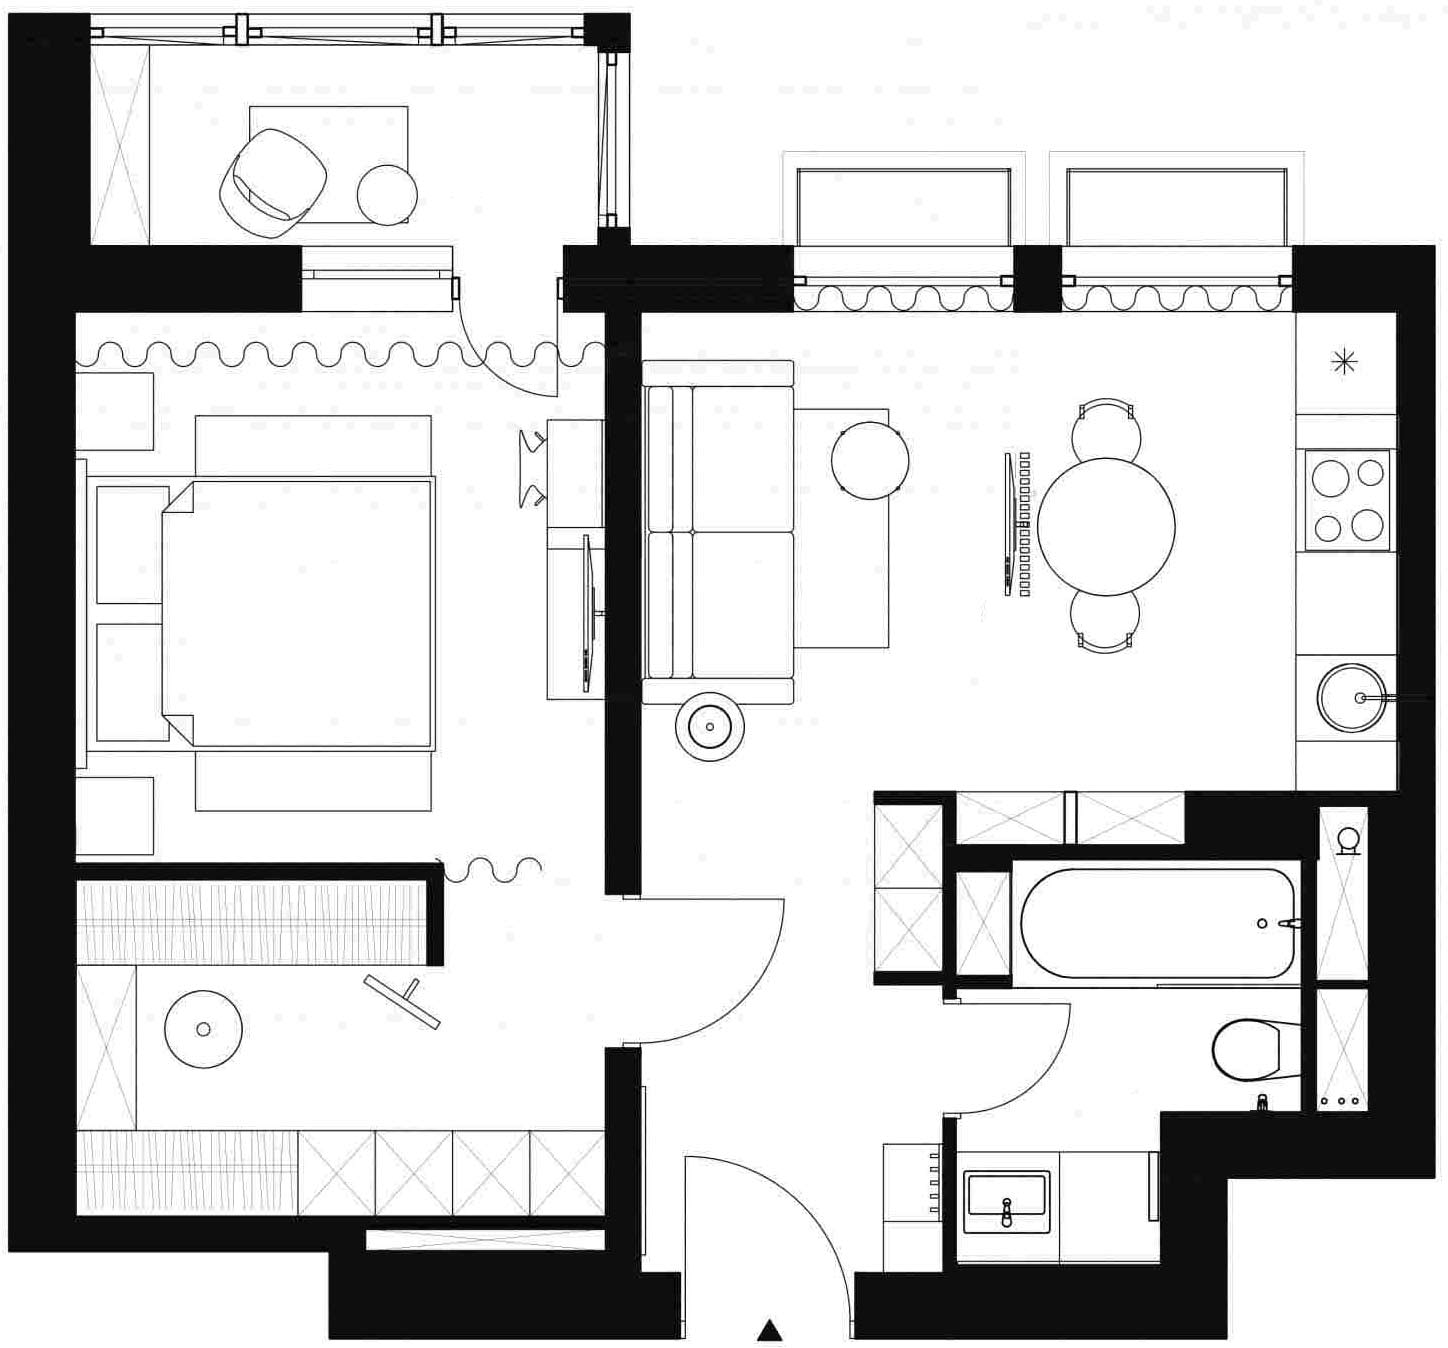 Minden ami a kényelemhez kell 41m2-en - modern, dekoratív berendezés kis lakásban